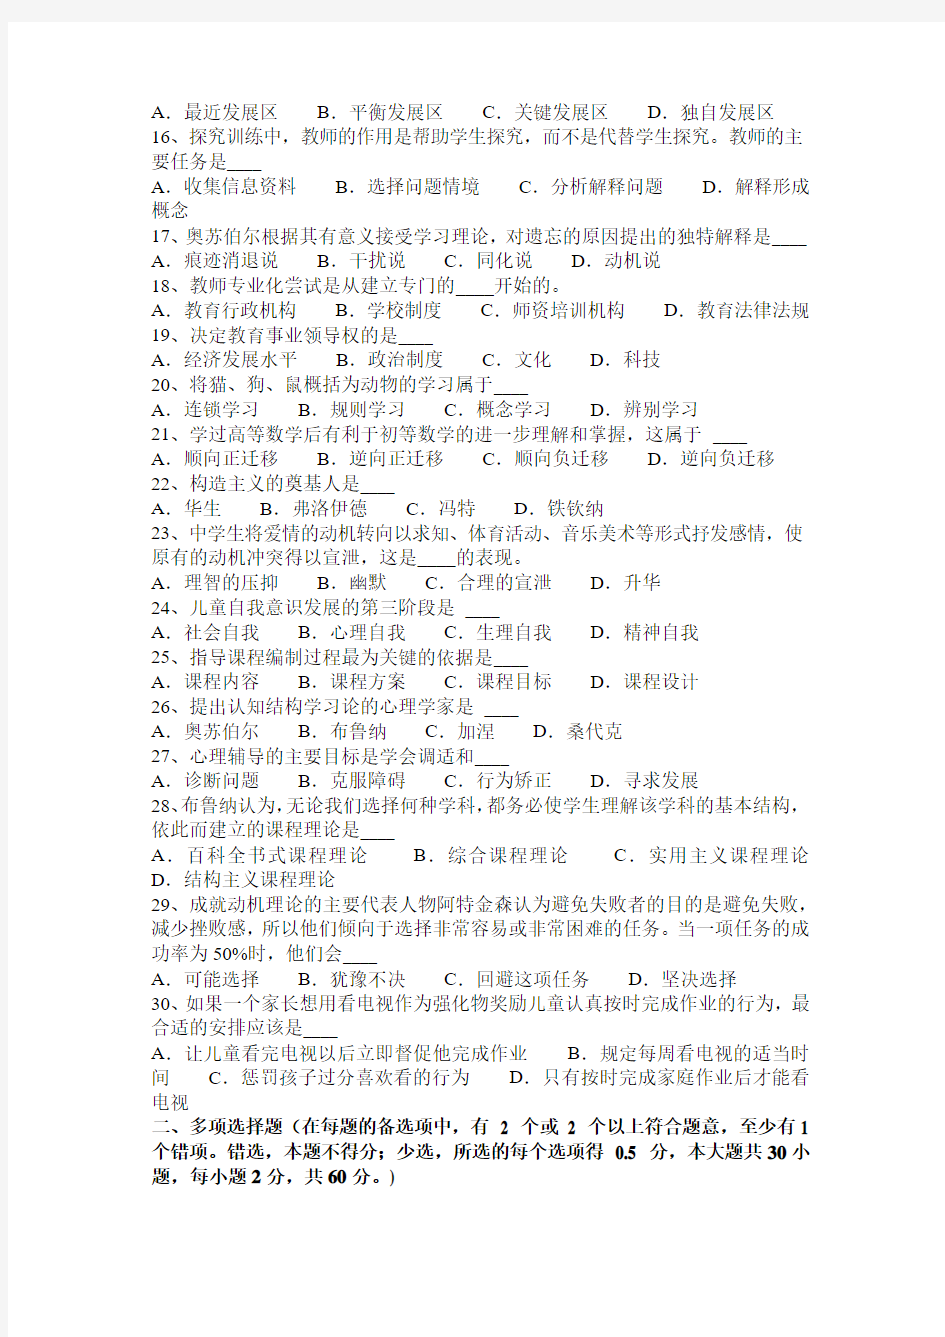 2015年台湾省教师资格证认定基础知识考试题